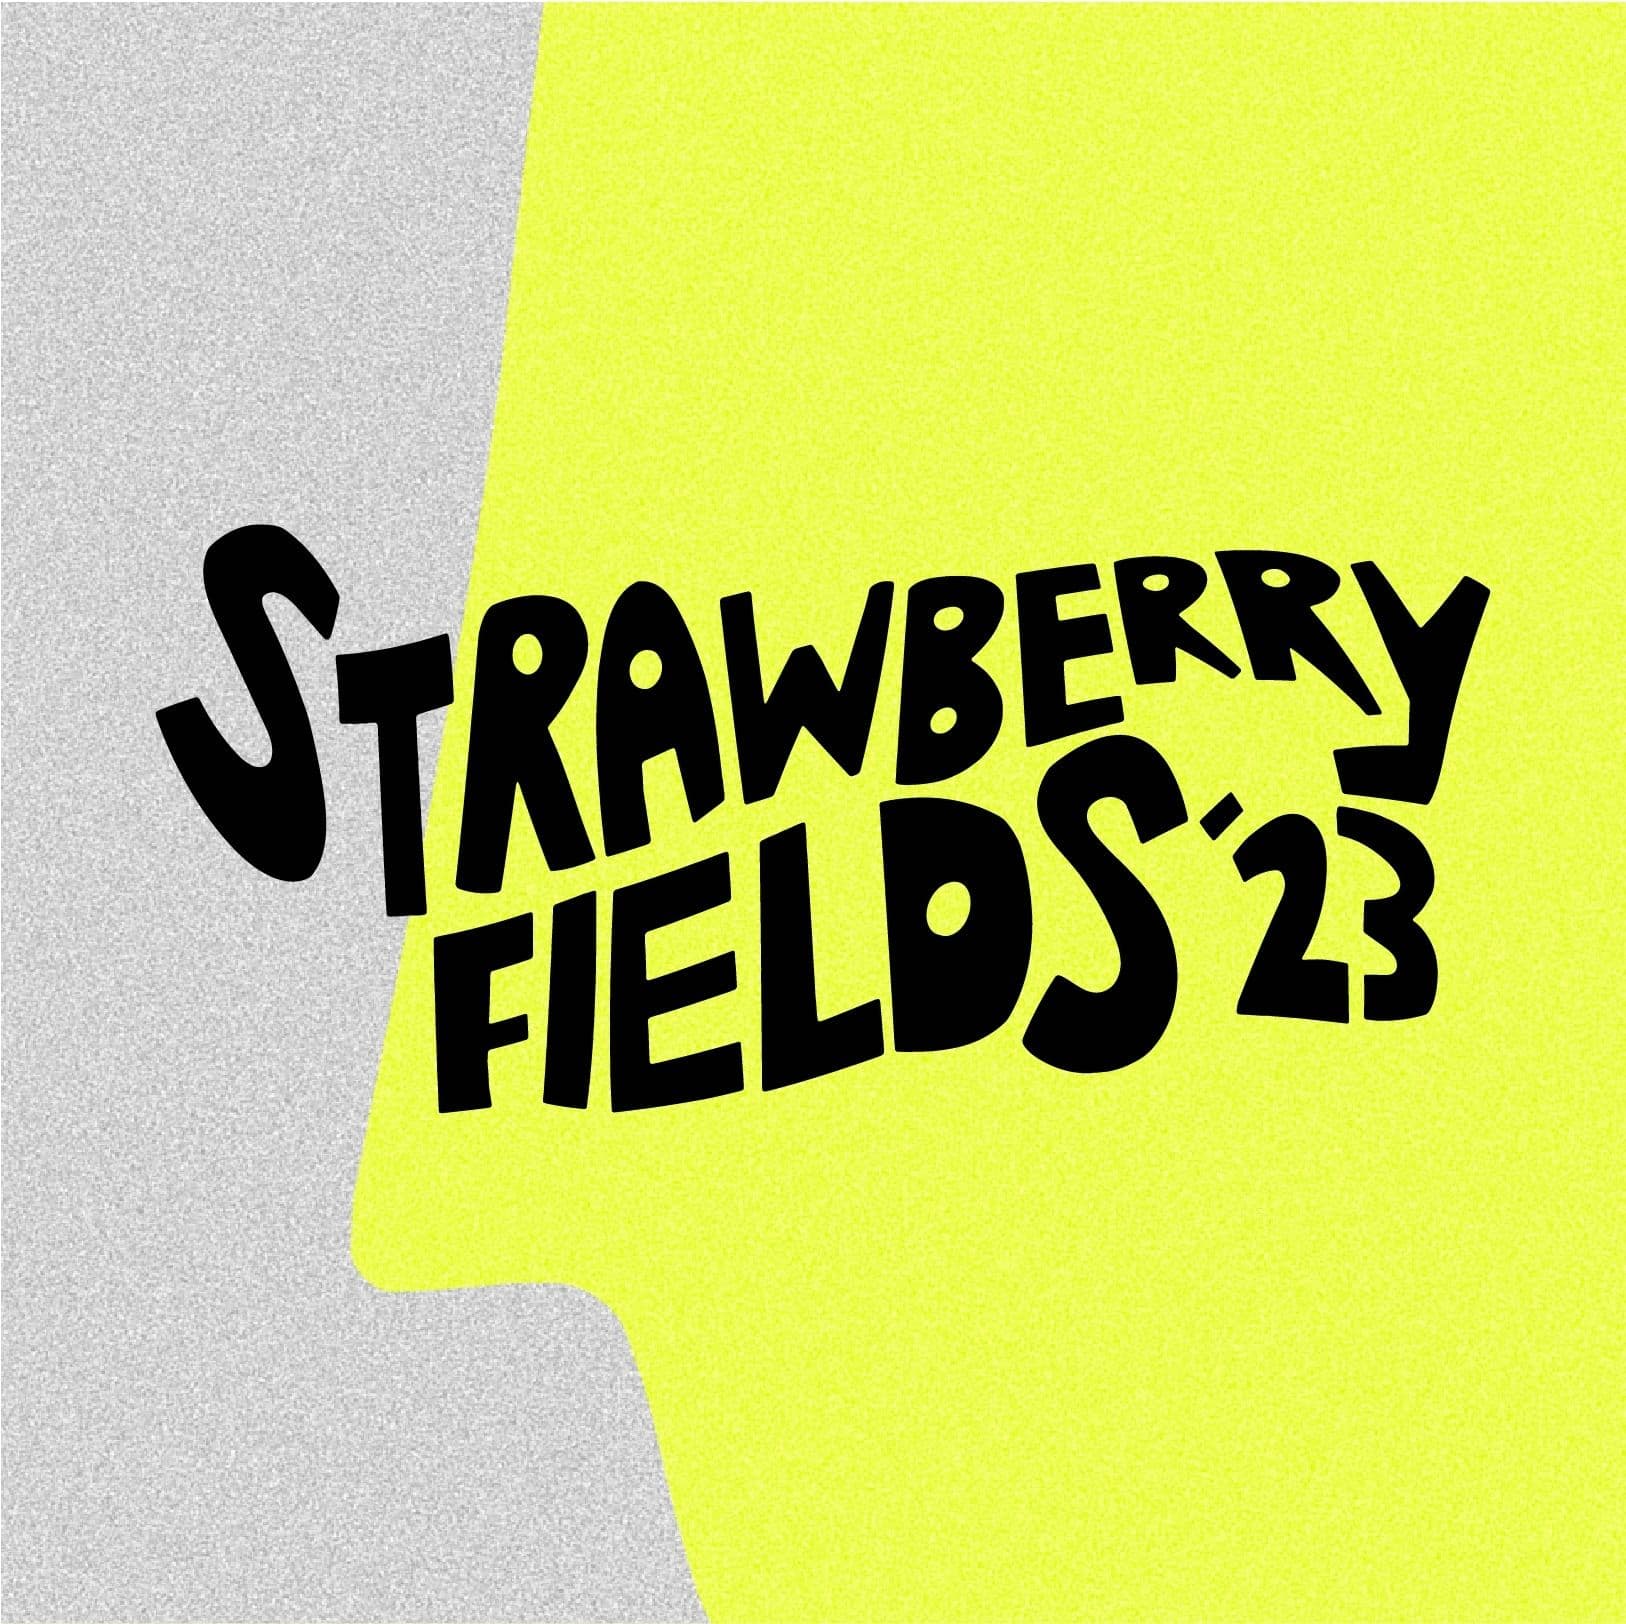 Strawberry Fields 2023 Lineup Revealed